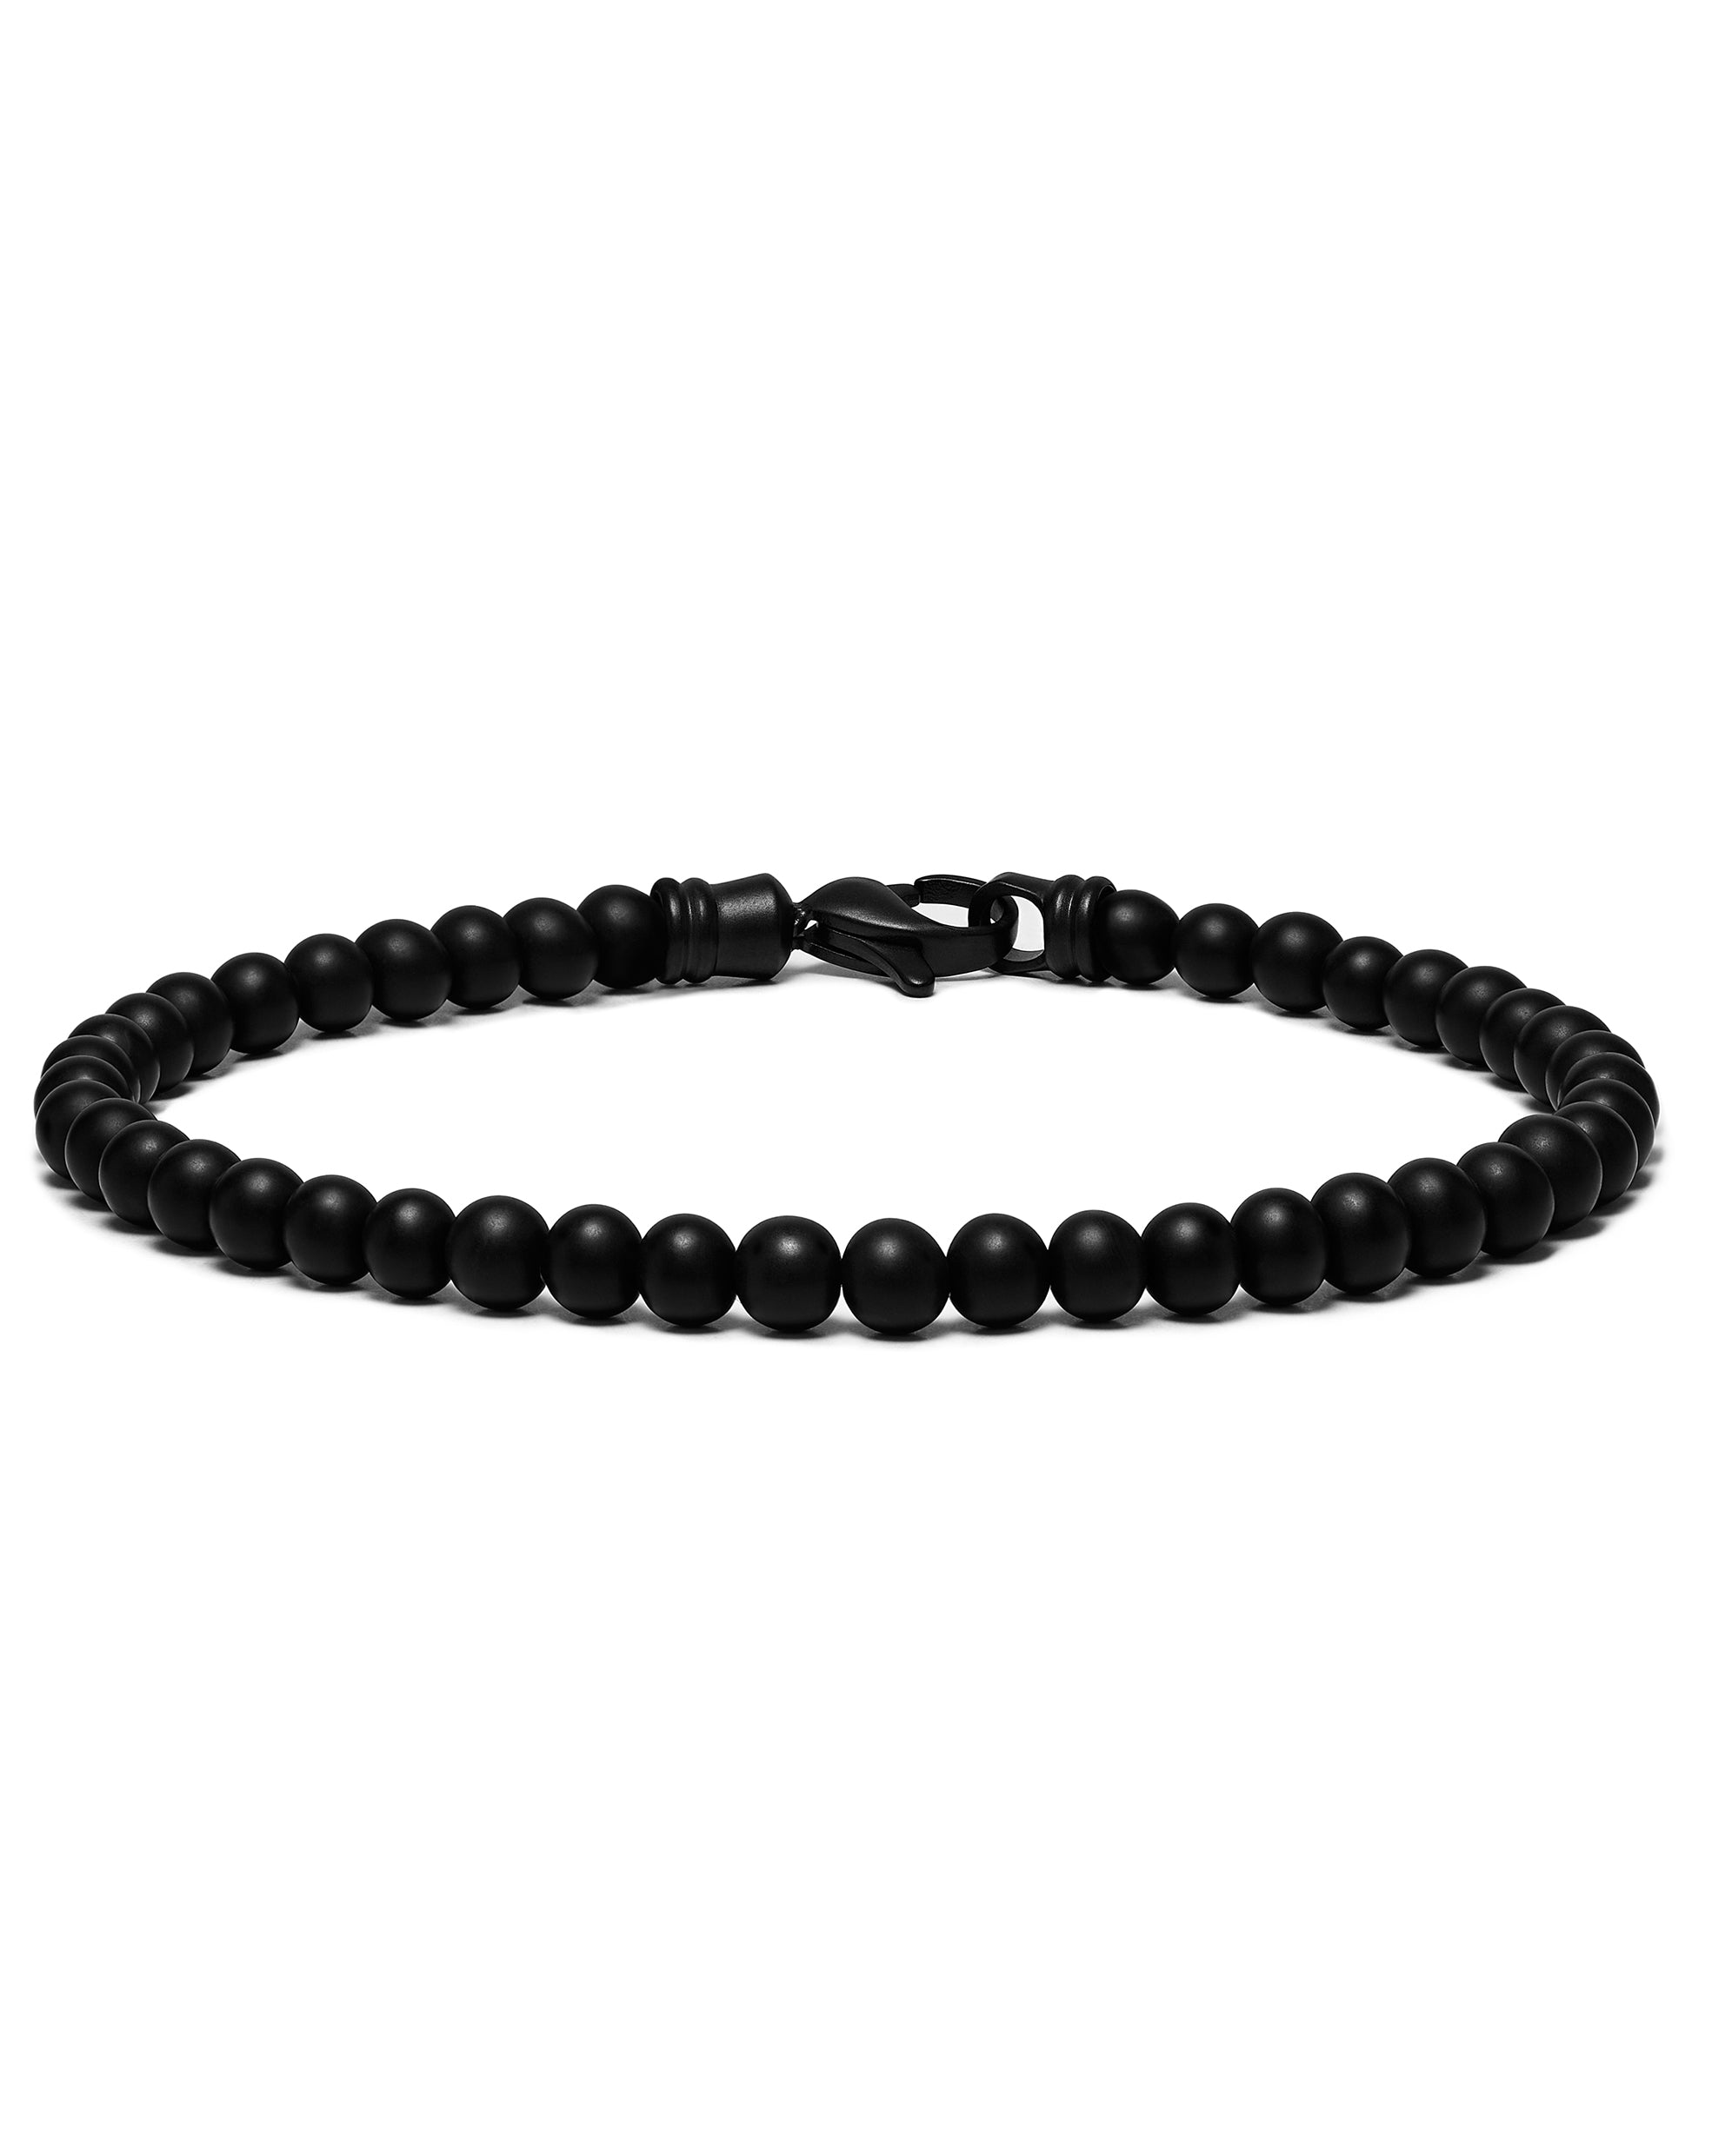 Bead Bracelet - Black Onyx | Vincero Watches & Vincero Collective